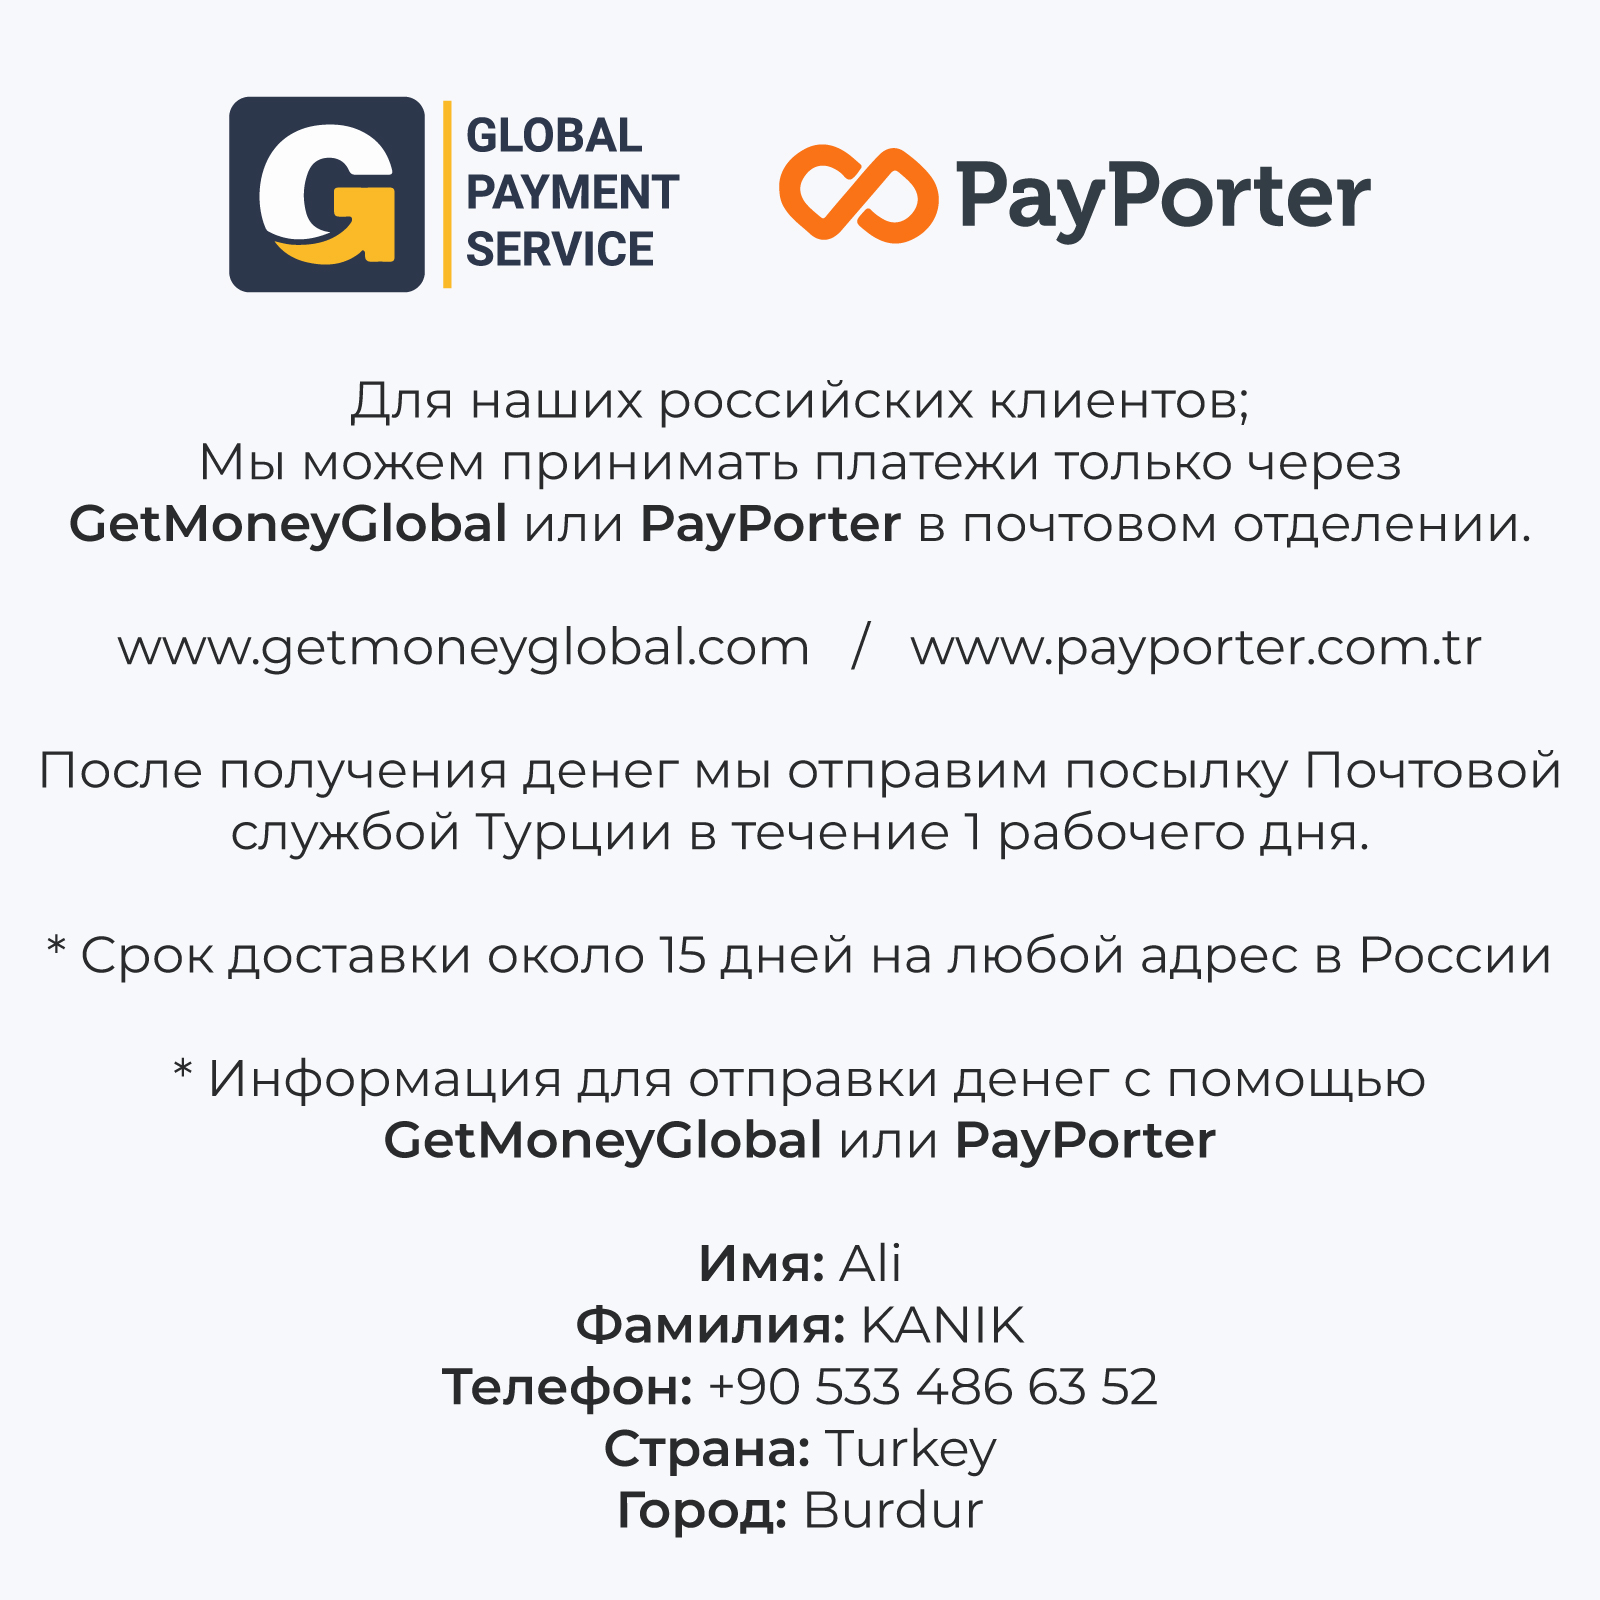 GetMoneyGlobal & PayPorter